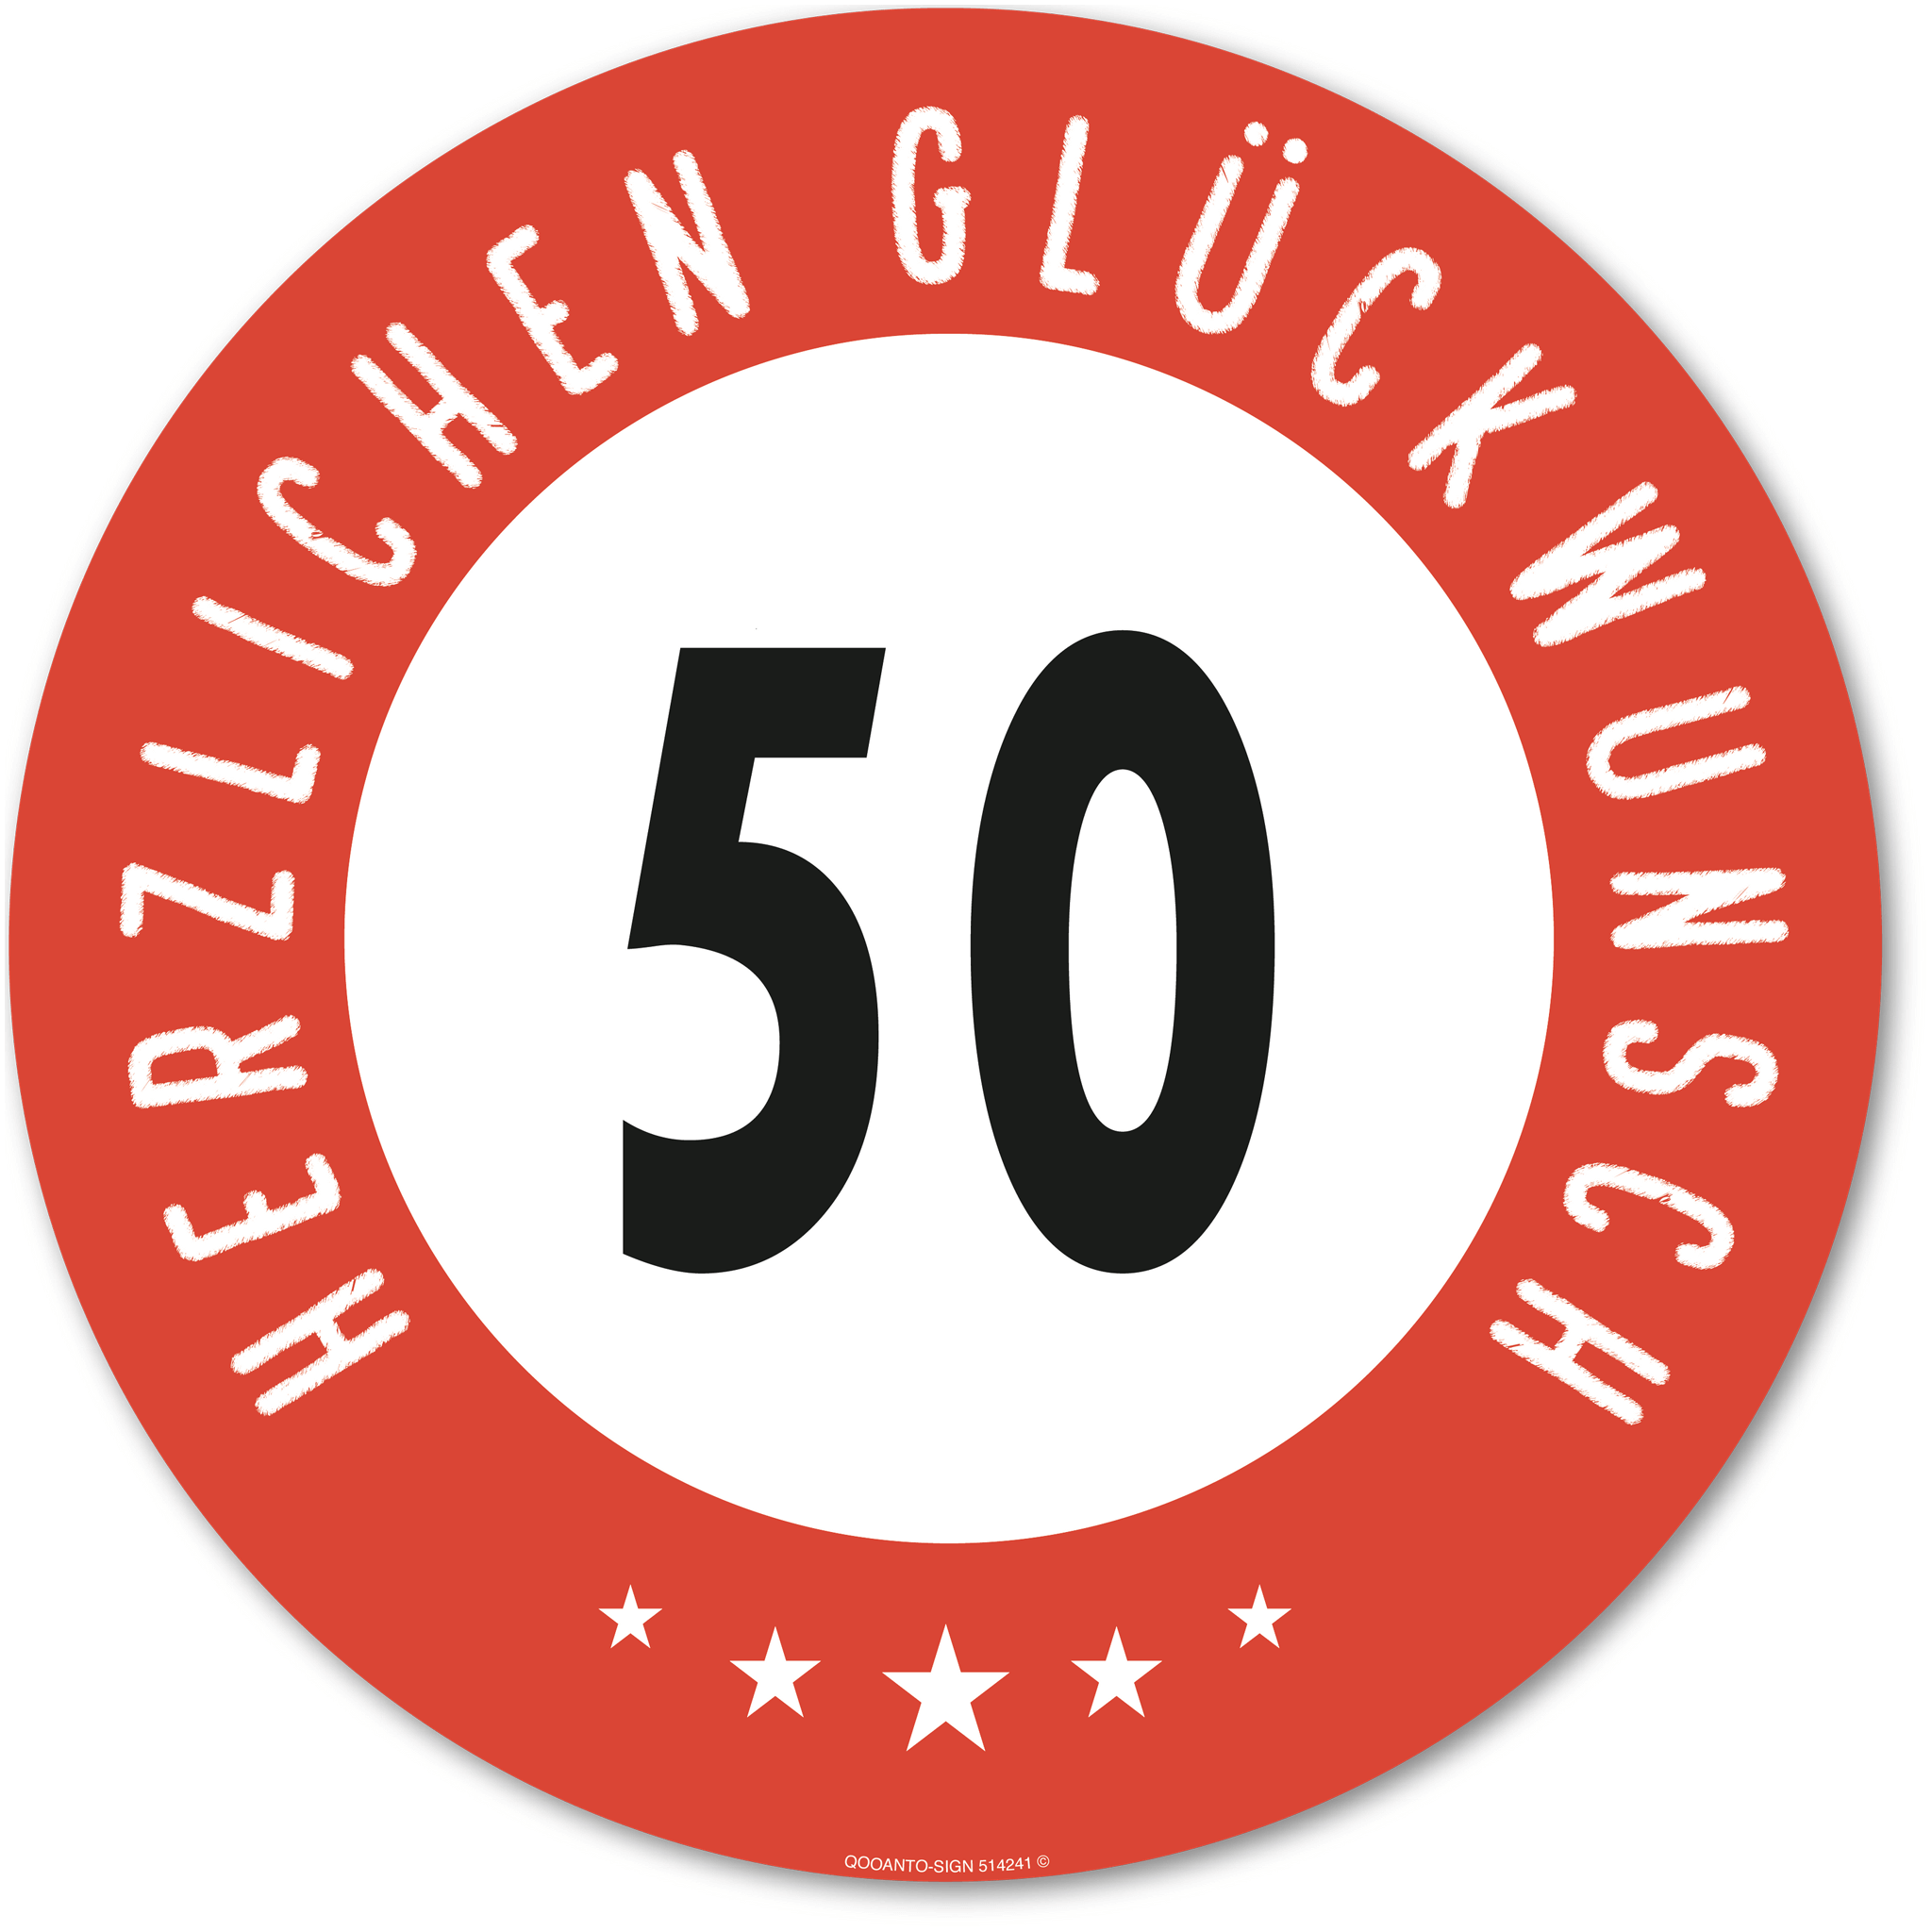 Herzlichen Glückwunsch 50 Jahre mit 5 Sterne - Geburtstag, Jubiläum, Ehrentag, Jahrestag Strassenschild